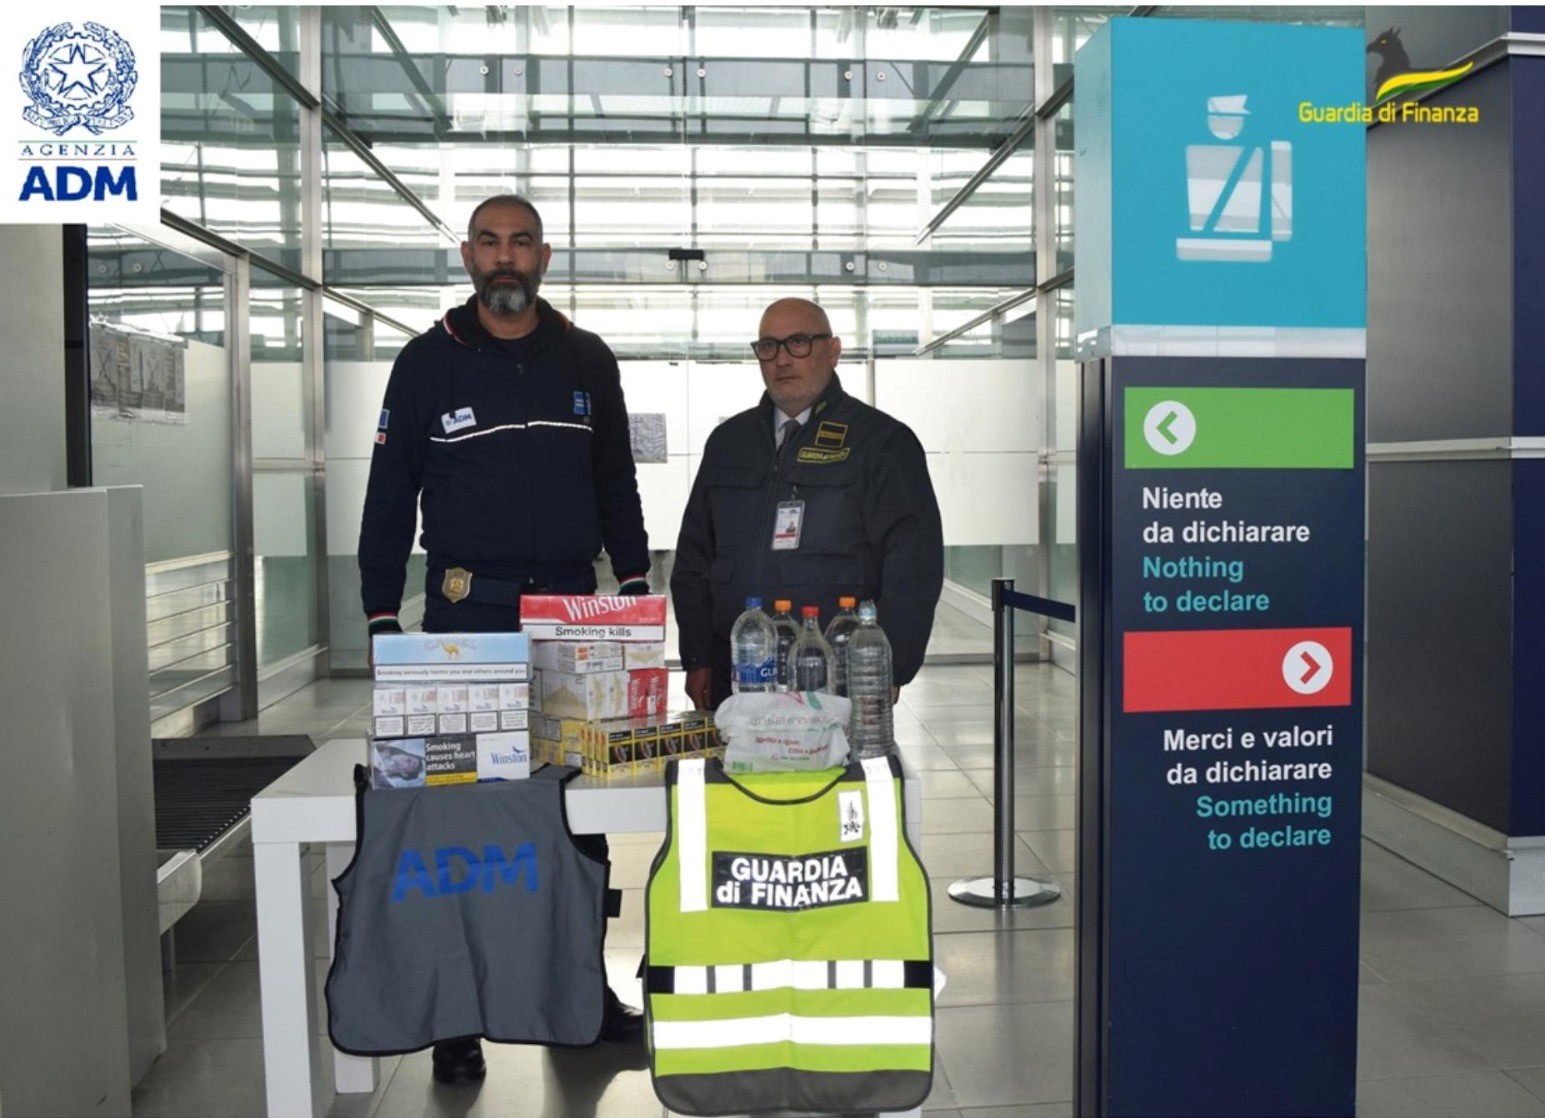 Sigarette di contrabbando e grappa non consentita: migliaia di sequestri all’aeroporto Sanzio